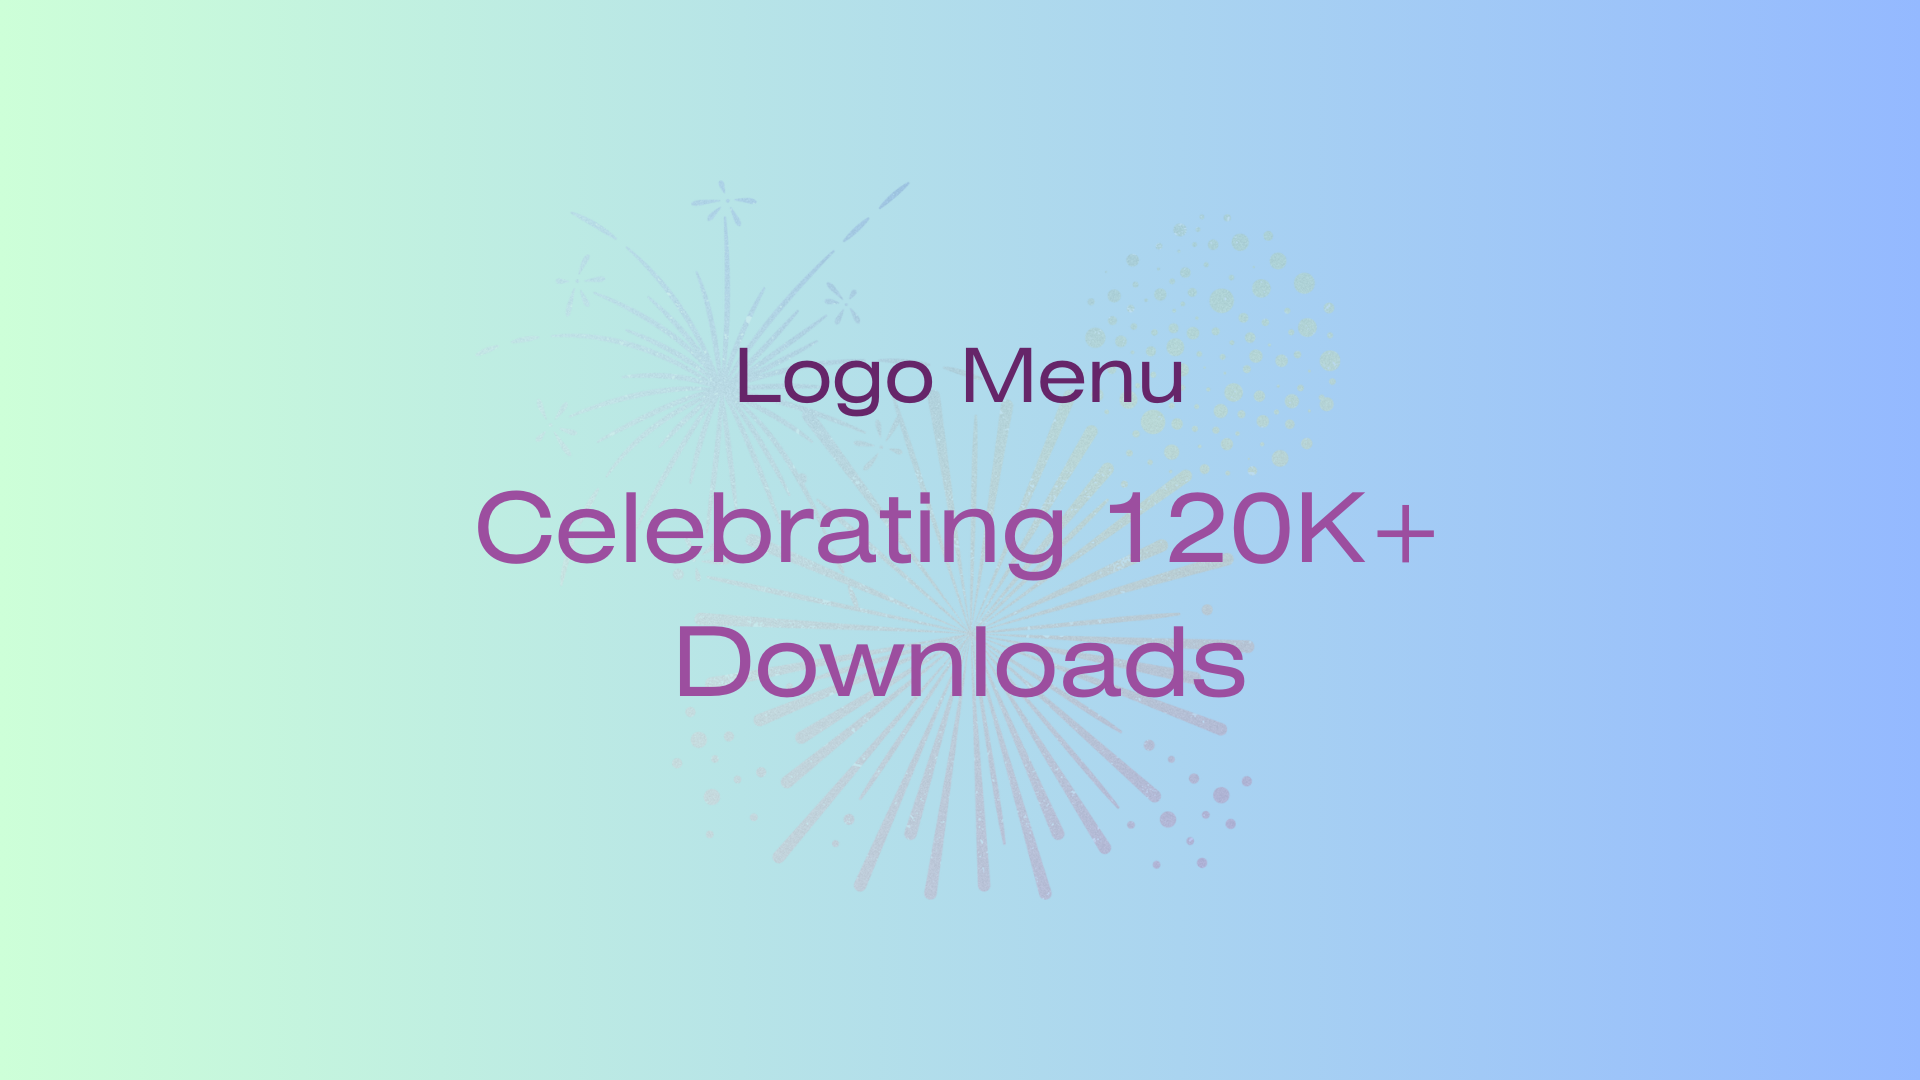 Logo Menu 120k+ downloads image